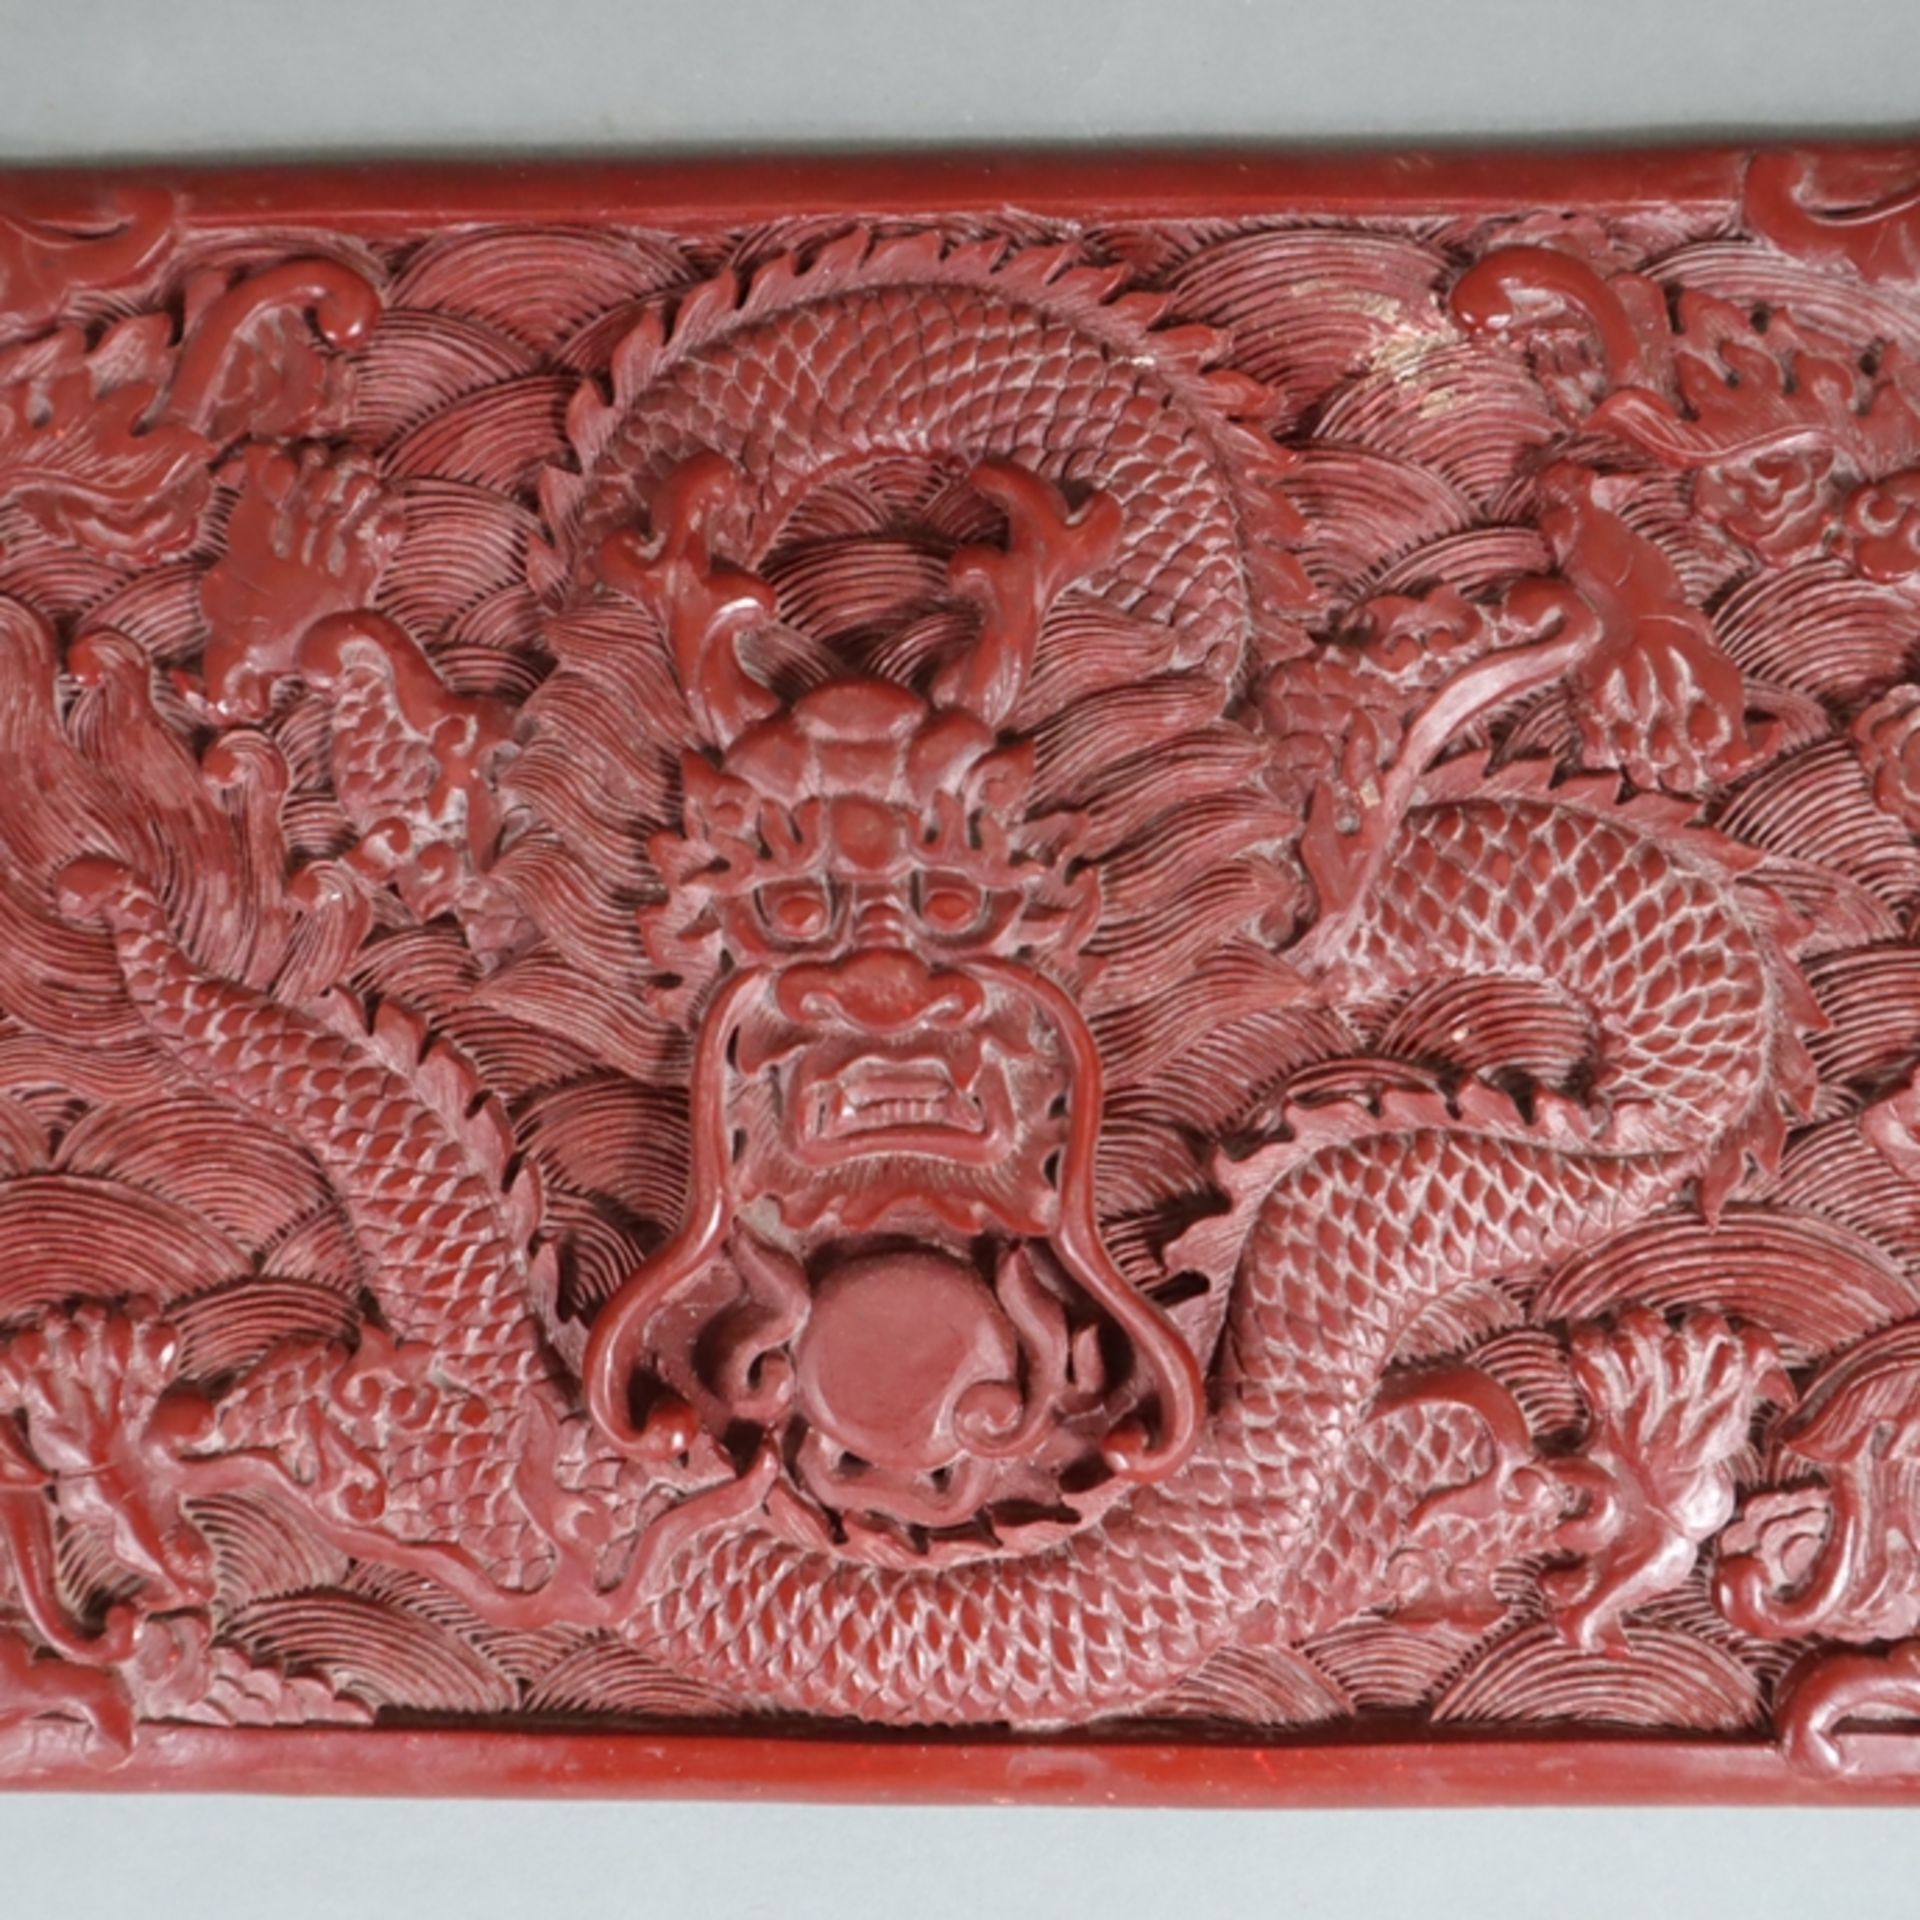 Große Lackplakette - China, roter Lack, rechteckig, in Reliefarbeit gewundener fünfklauiger Drache - Image 3 of 6